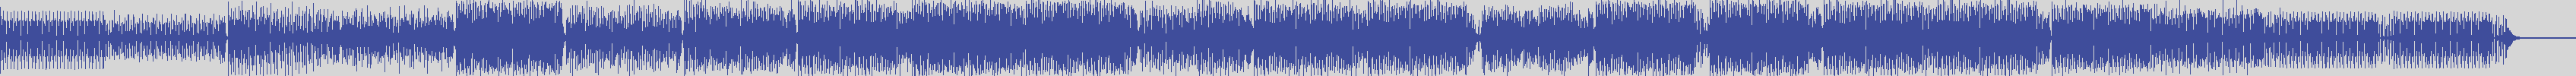 atomic_recordings [AR014] Loris Pionieri - Vamos Pra Gandaia [Original Version] audio wave form